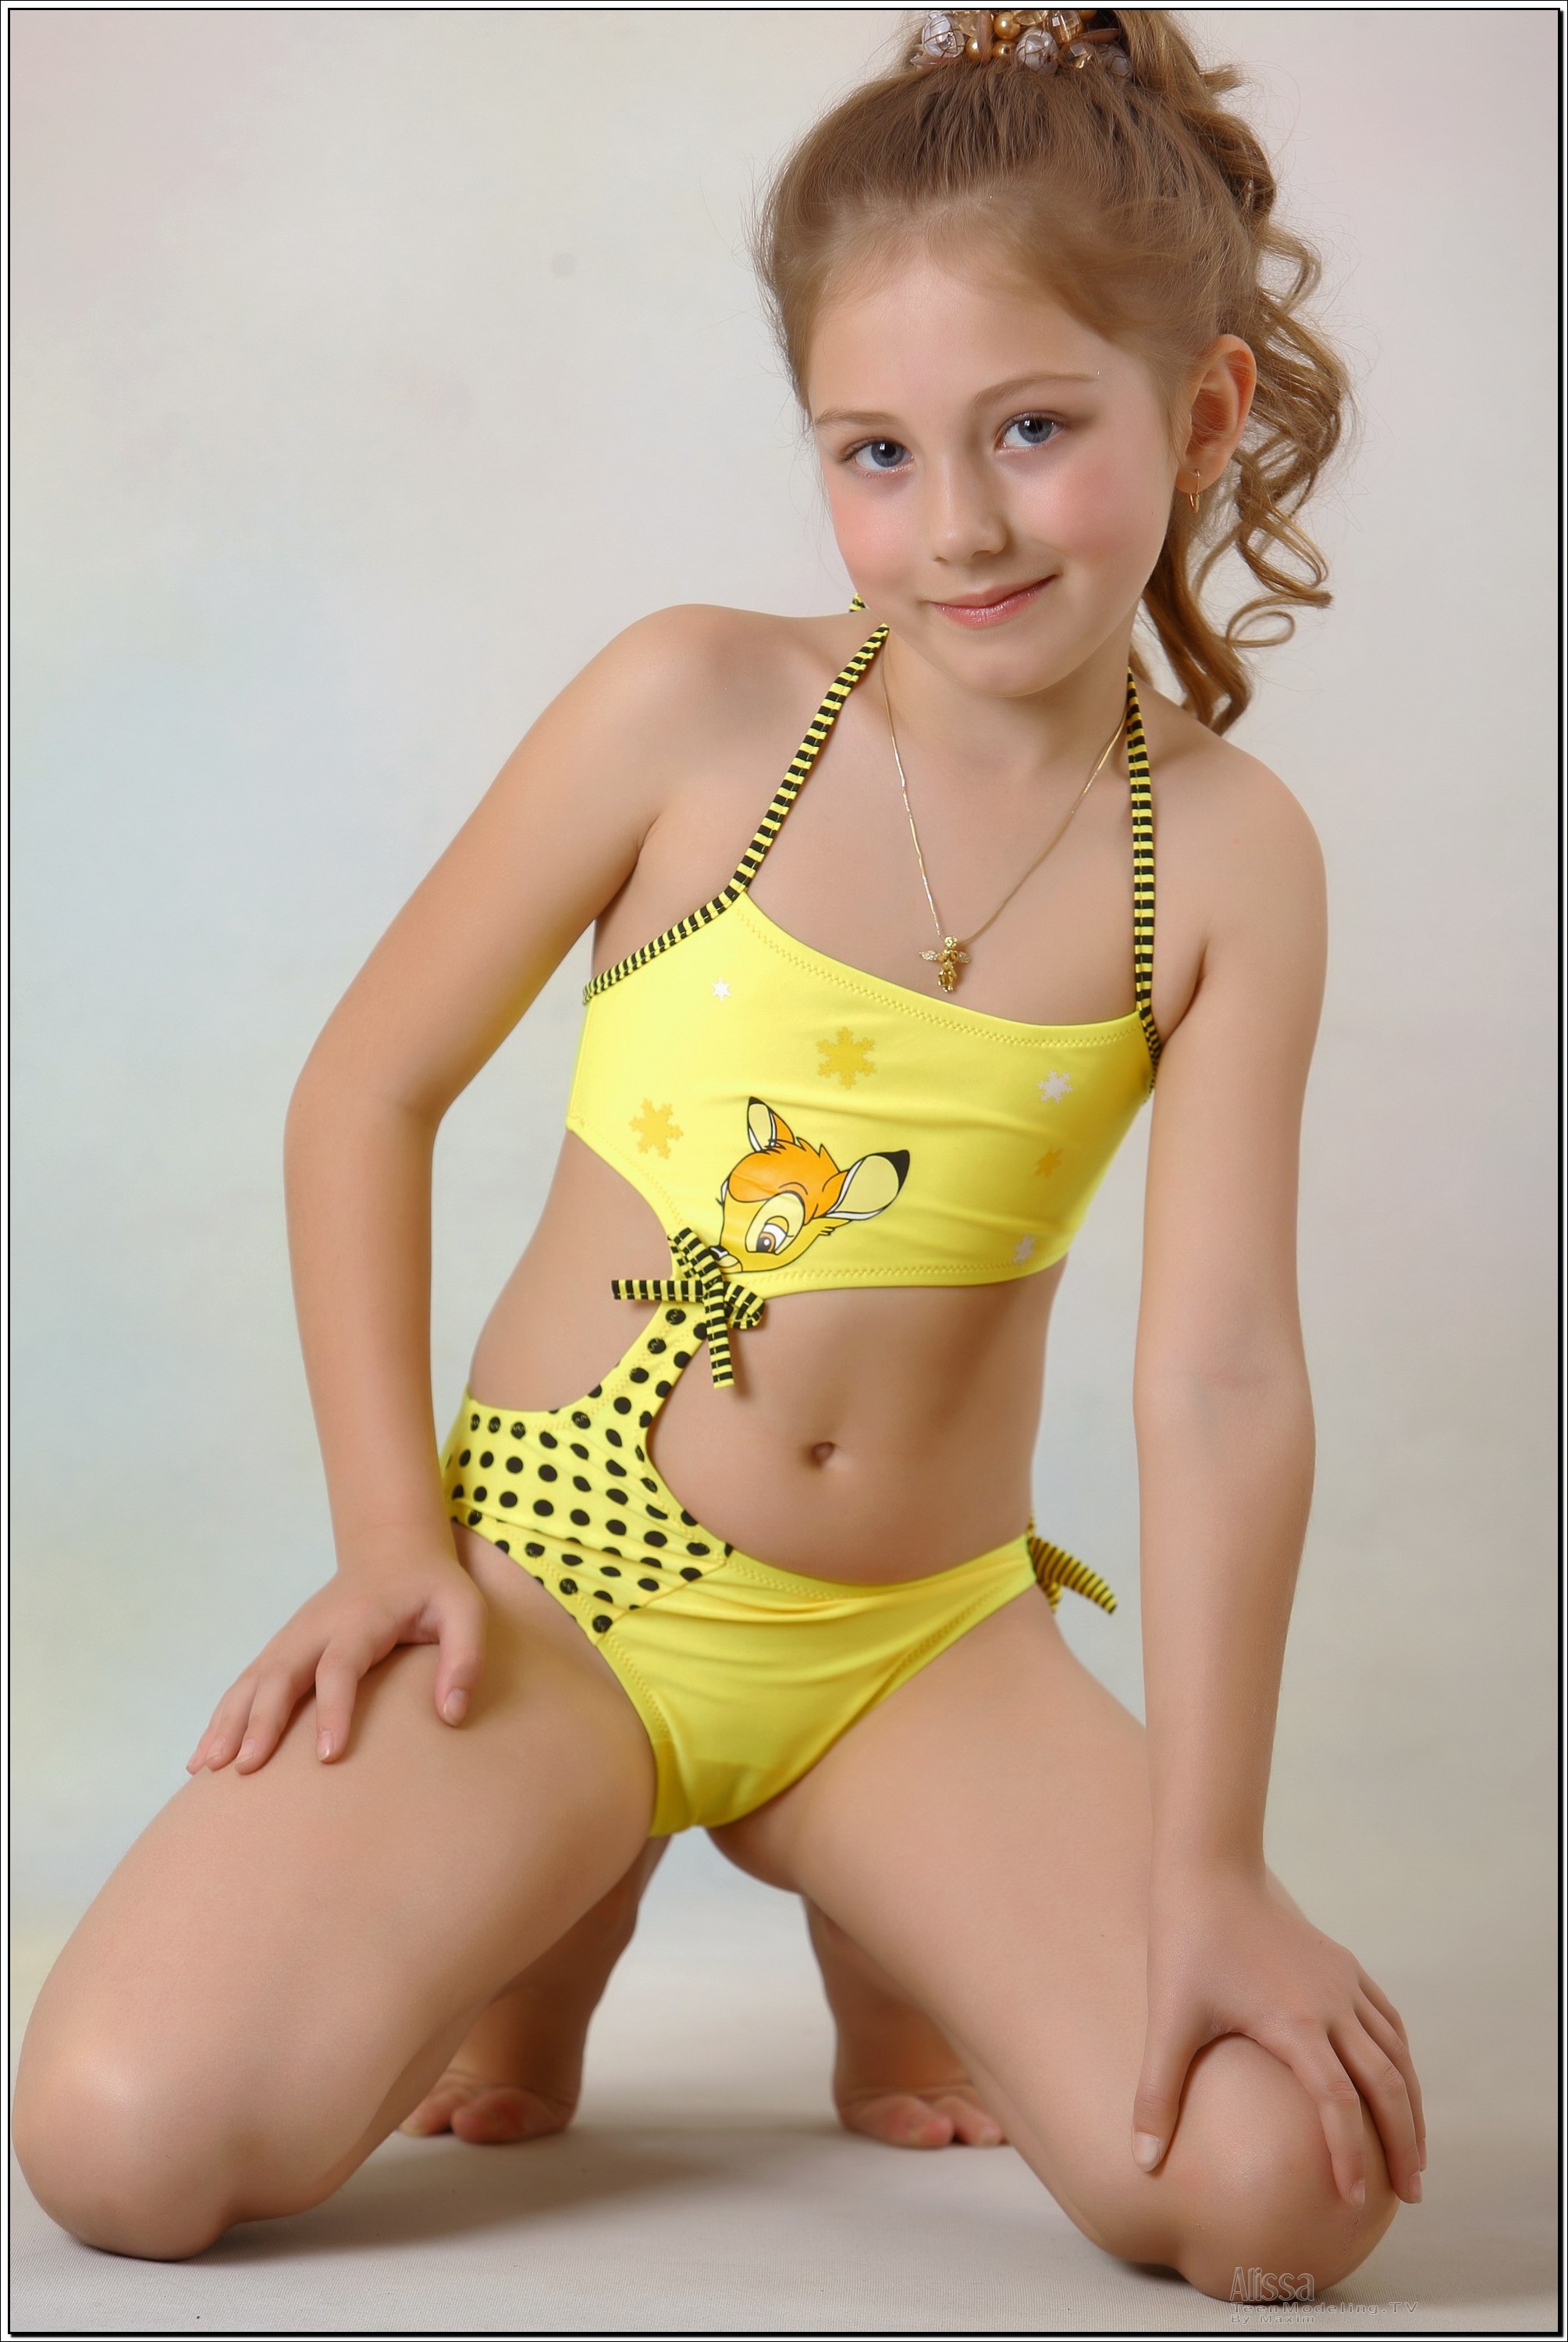 alissa_model_yellowswim_teenmodeling_tv_042.jpg